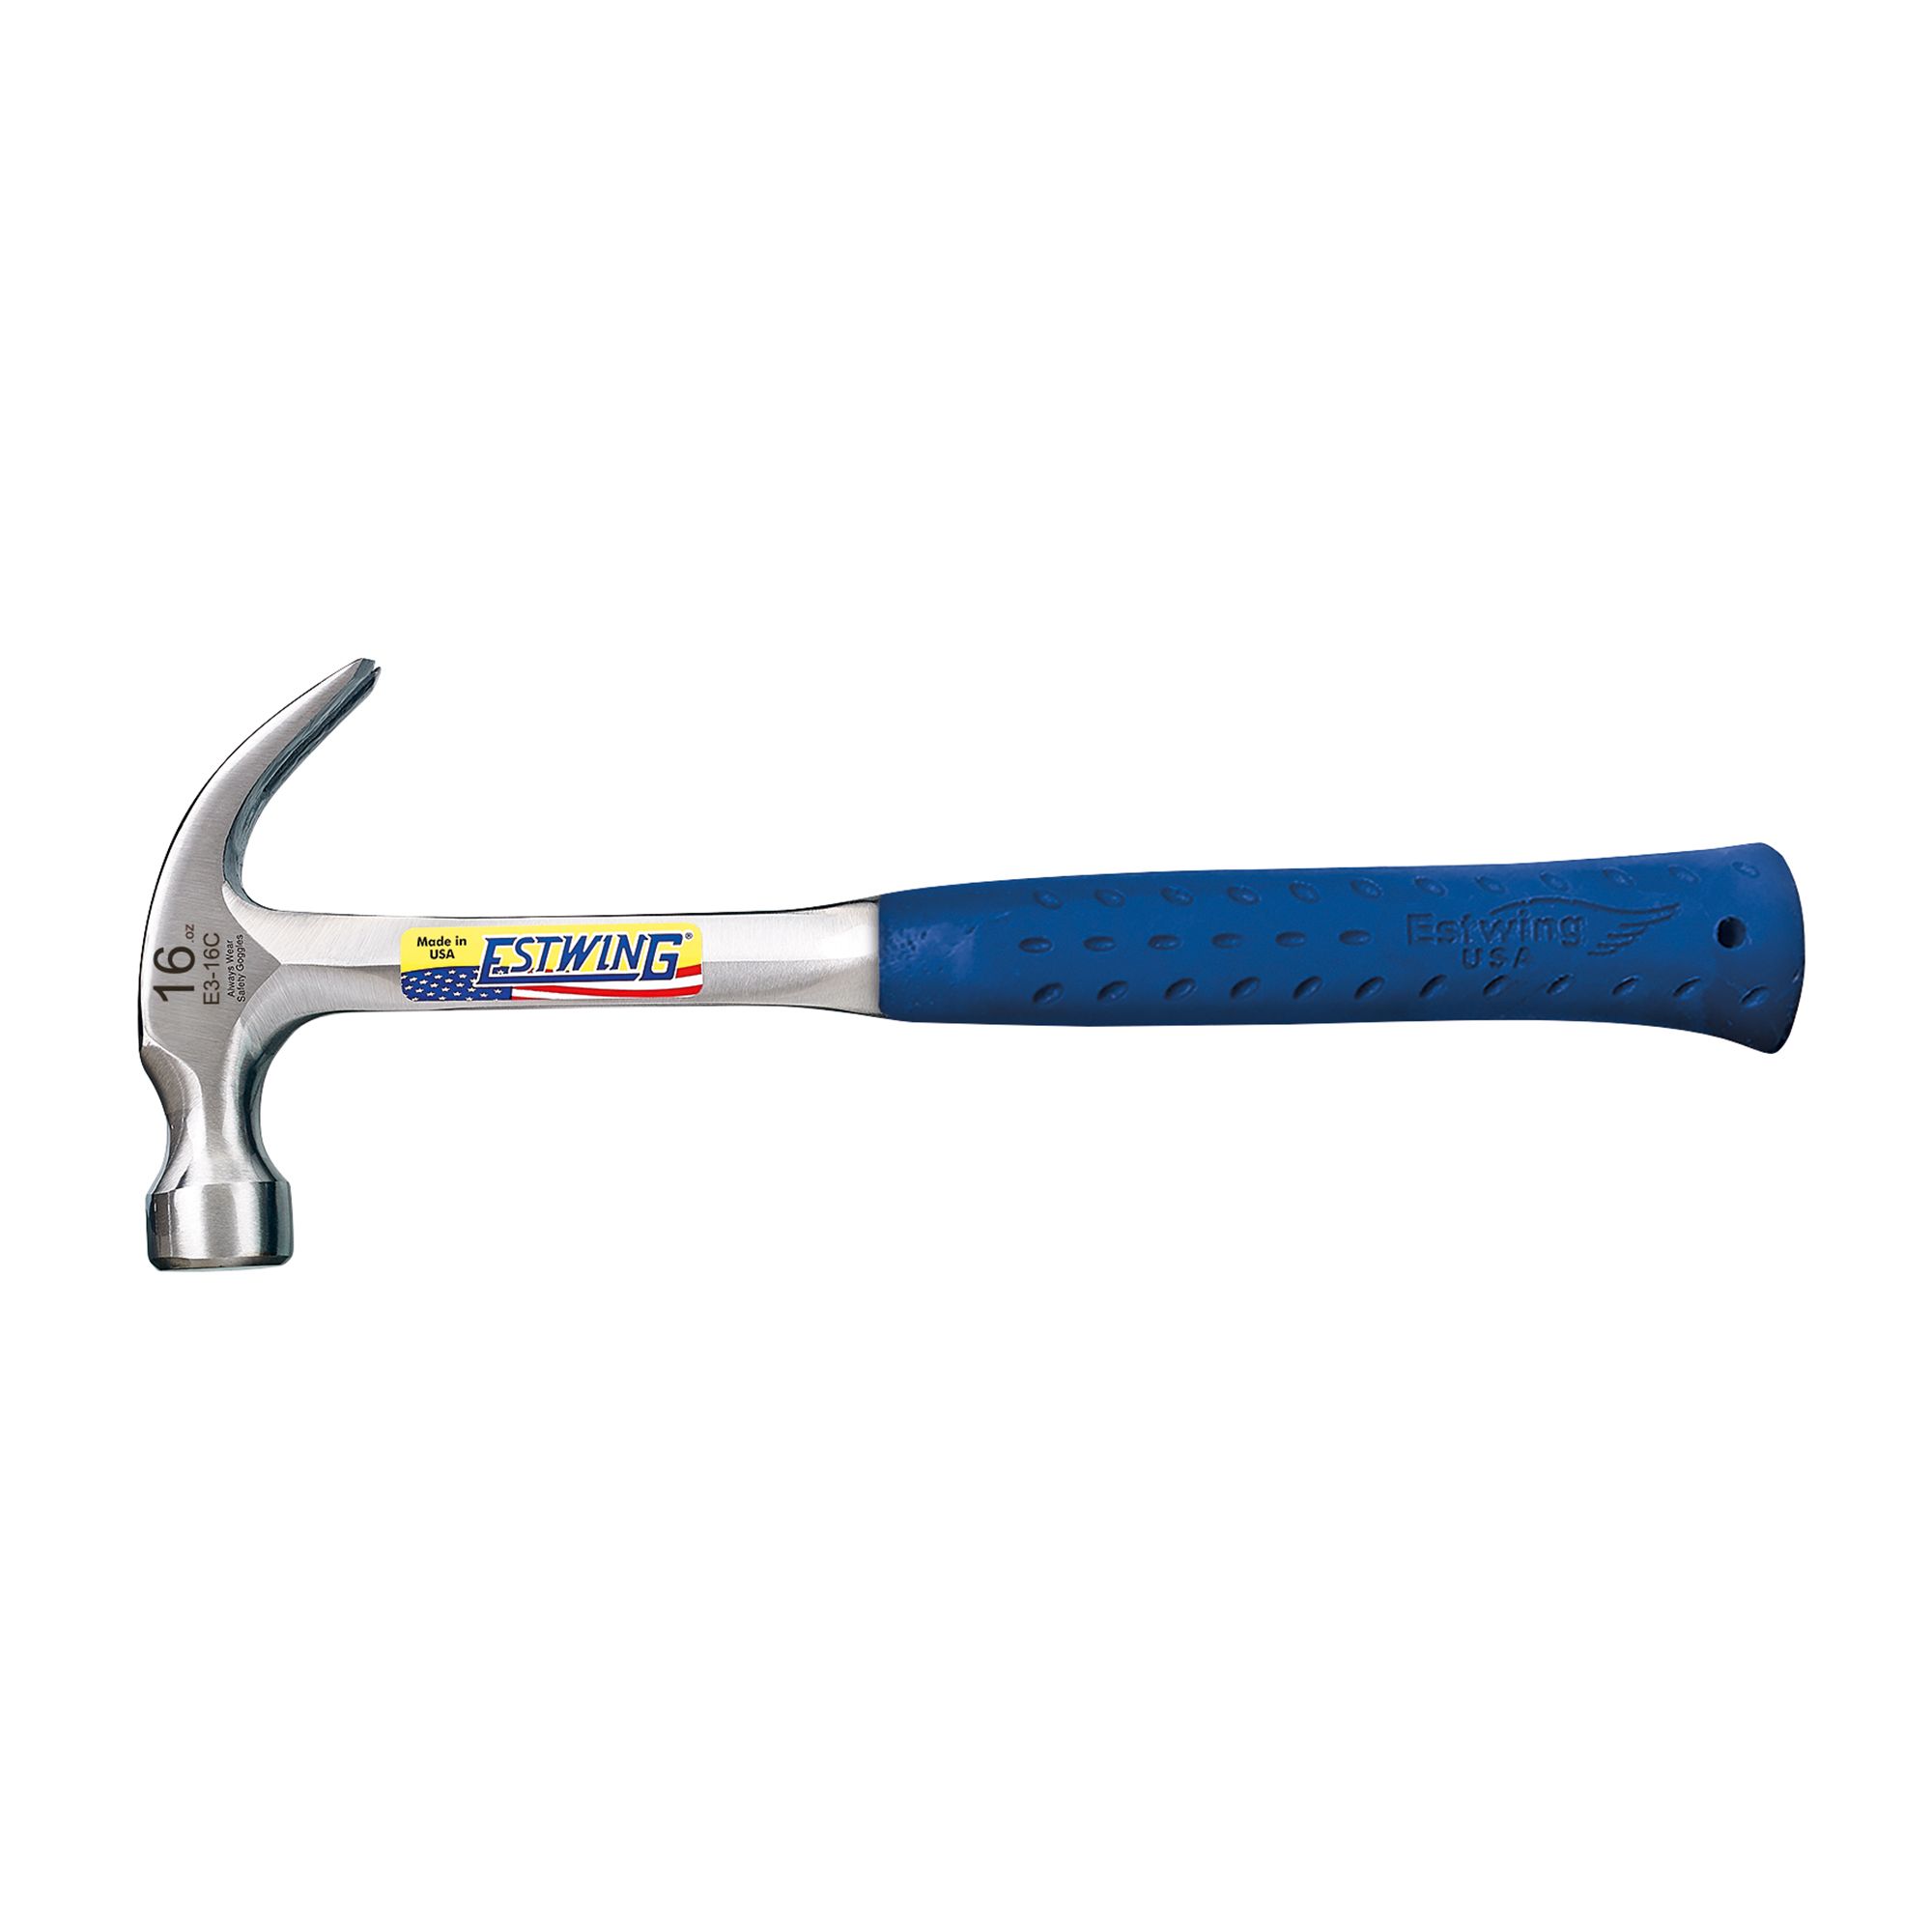 Estwing Claw Hammer 16oz